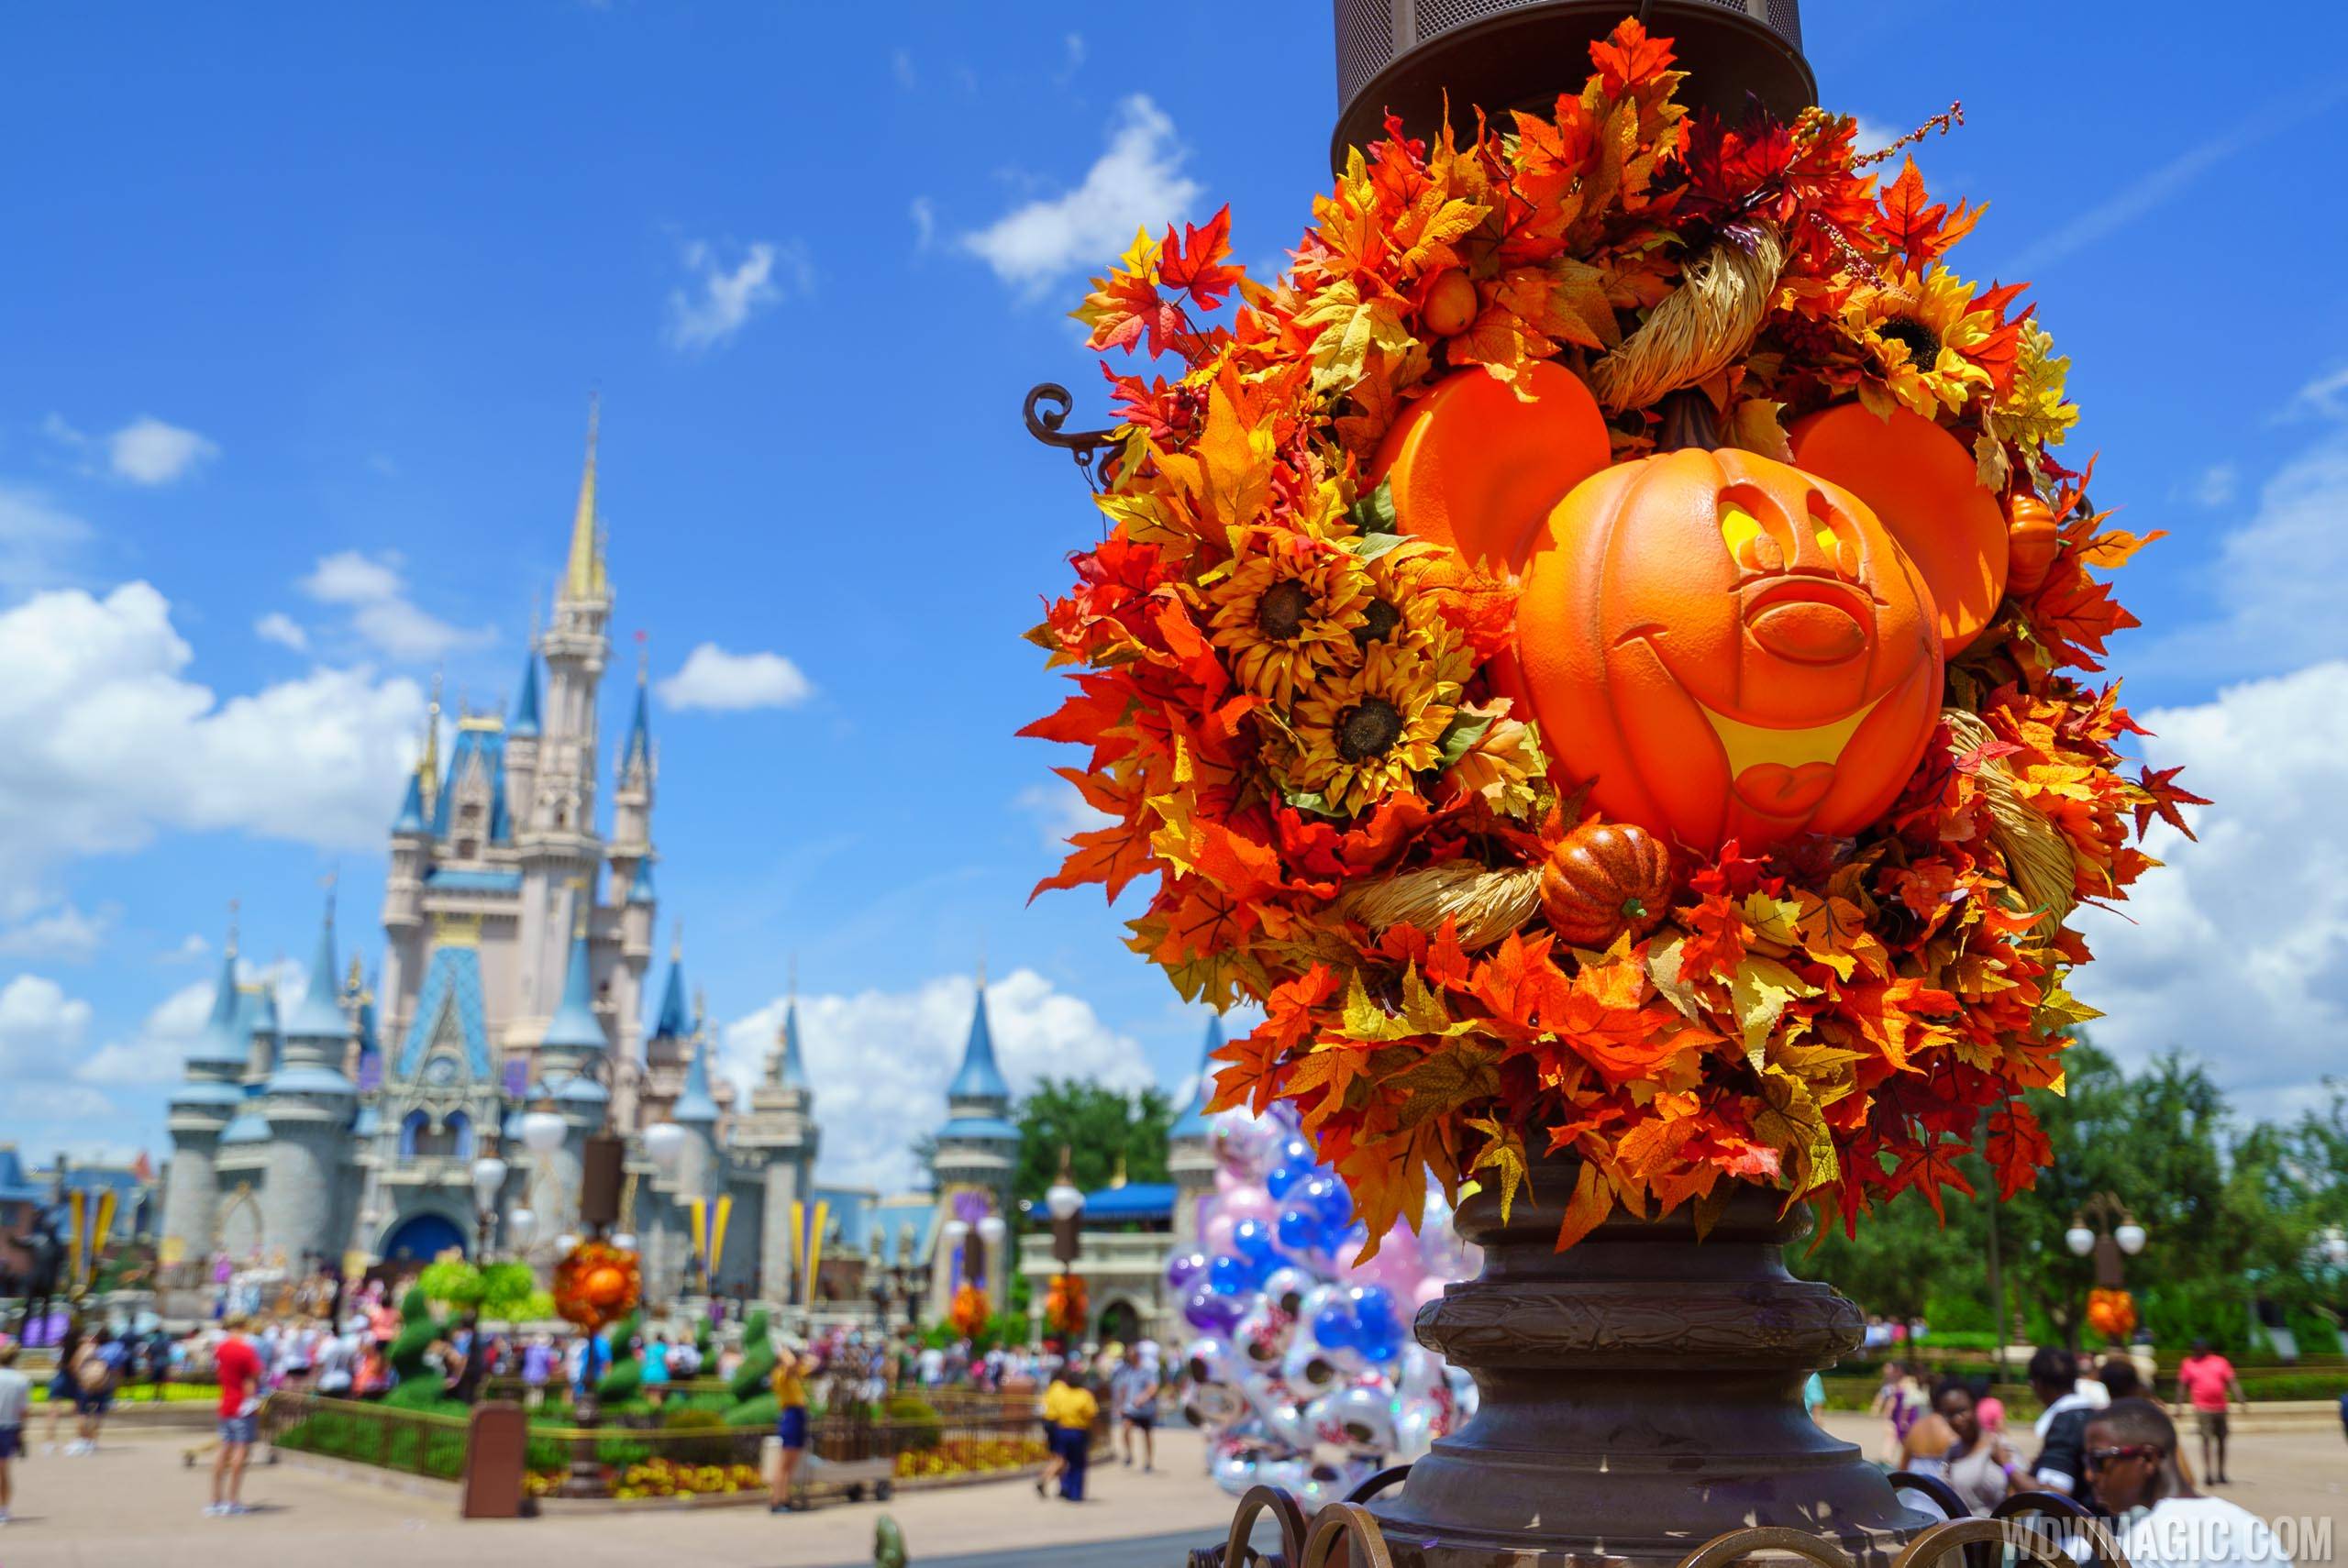 Magic Kingdom's fall Halloween decorations 2018